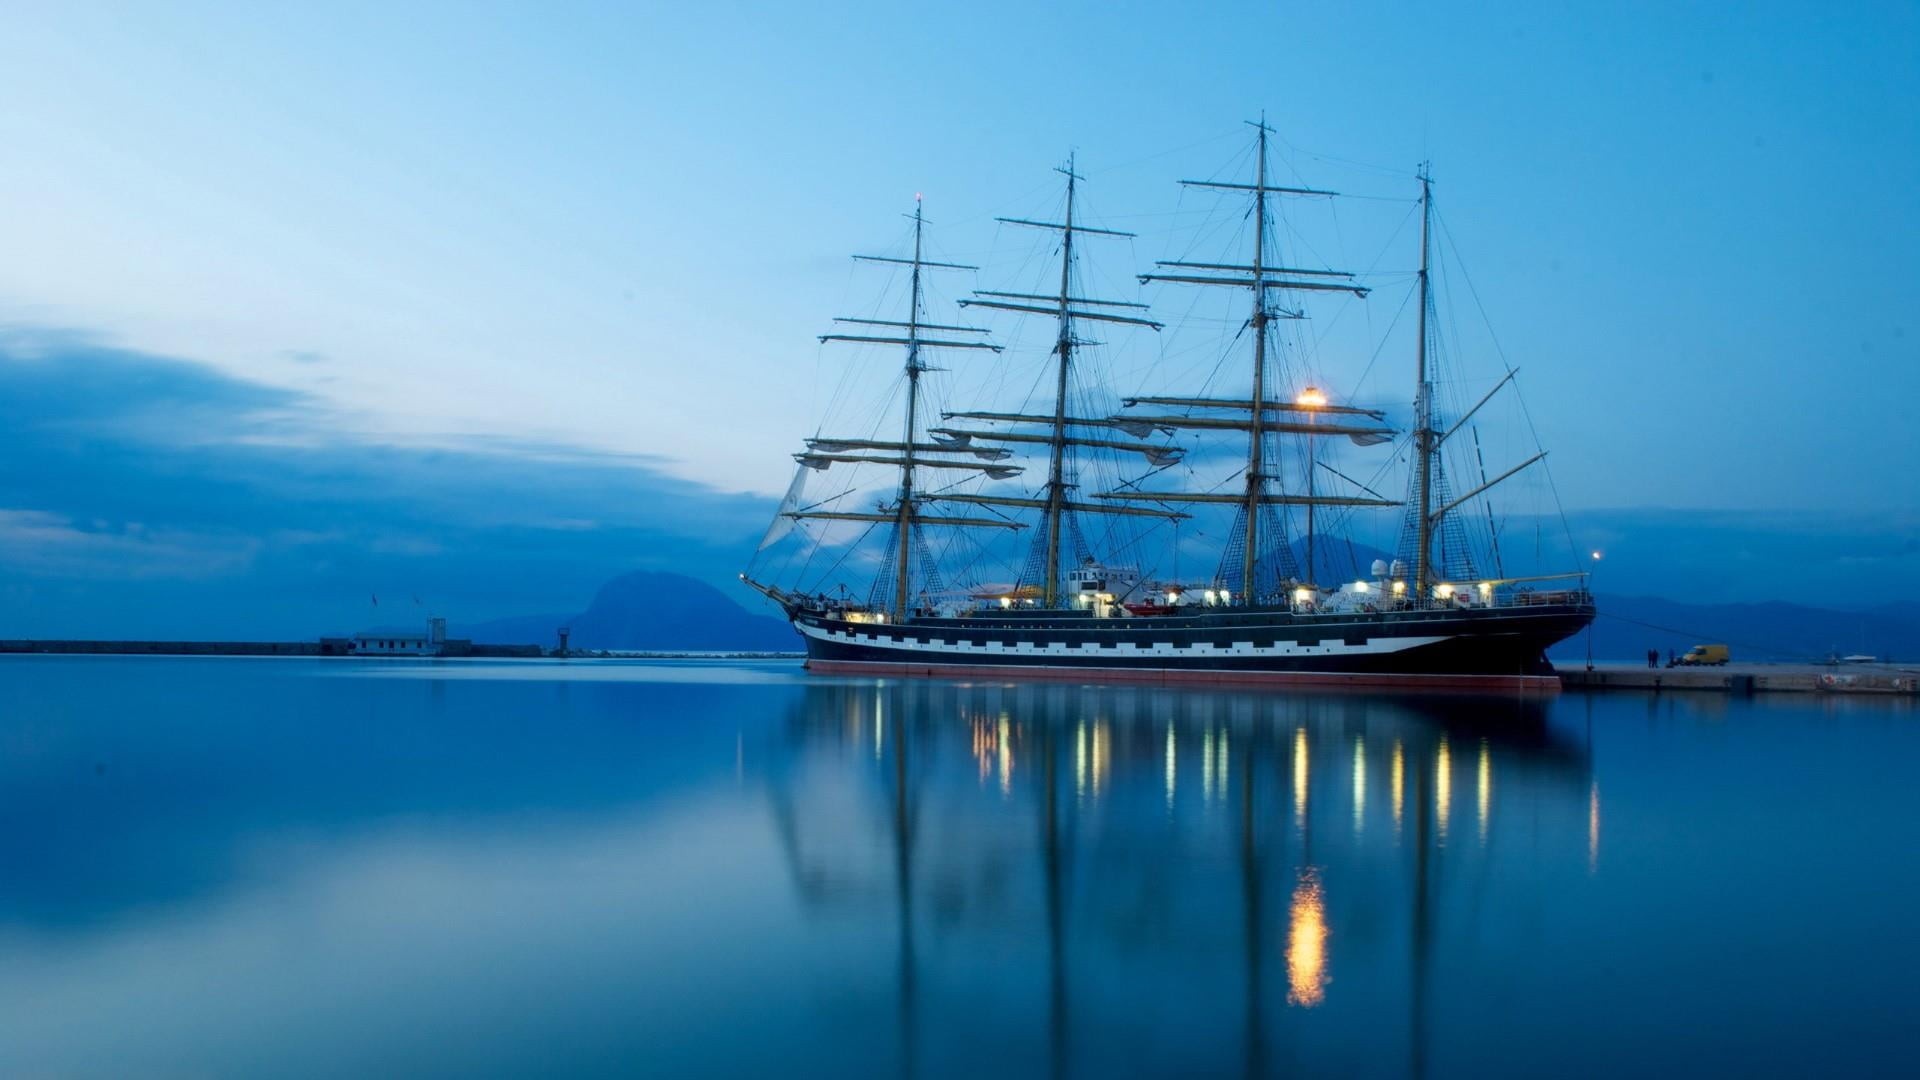 frigate, sailing ship, tall ship, calm, barque, brig, mast